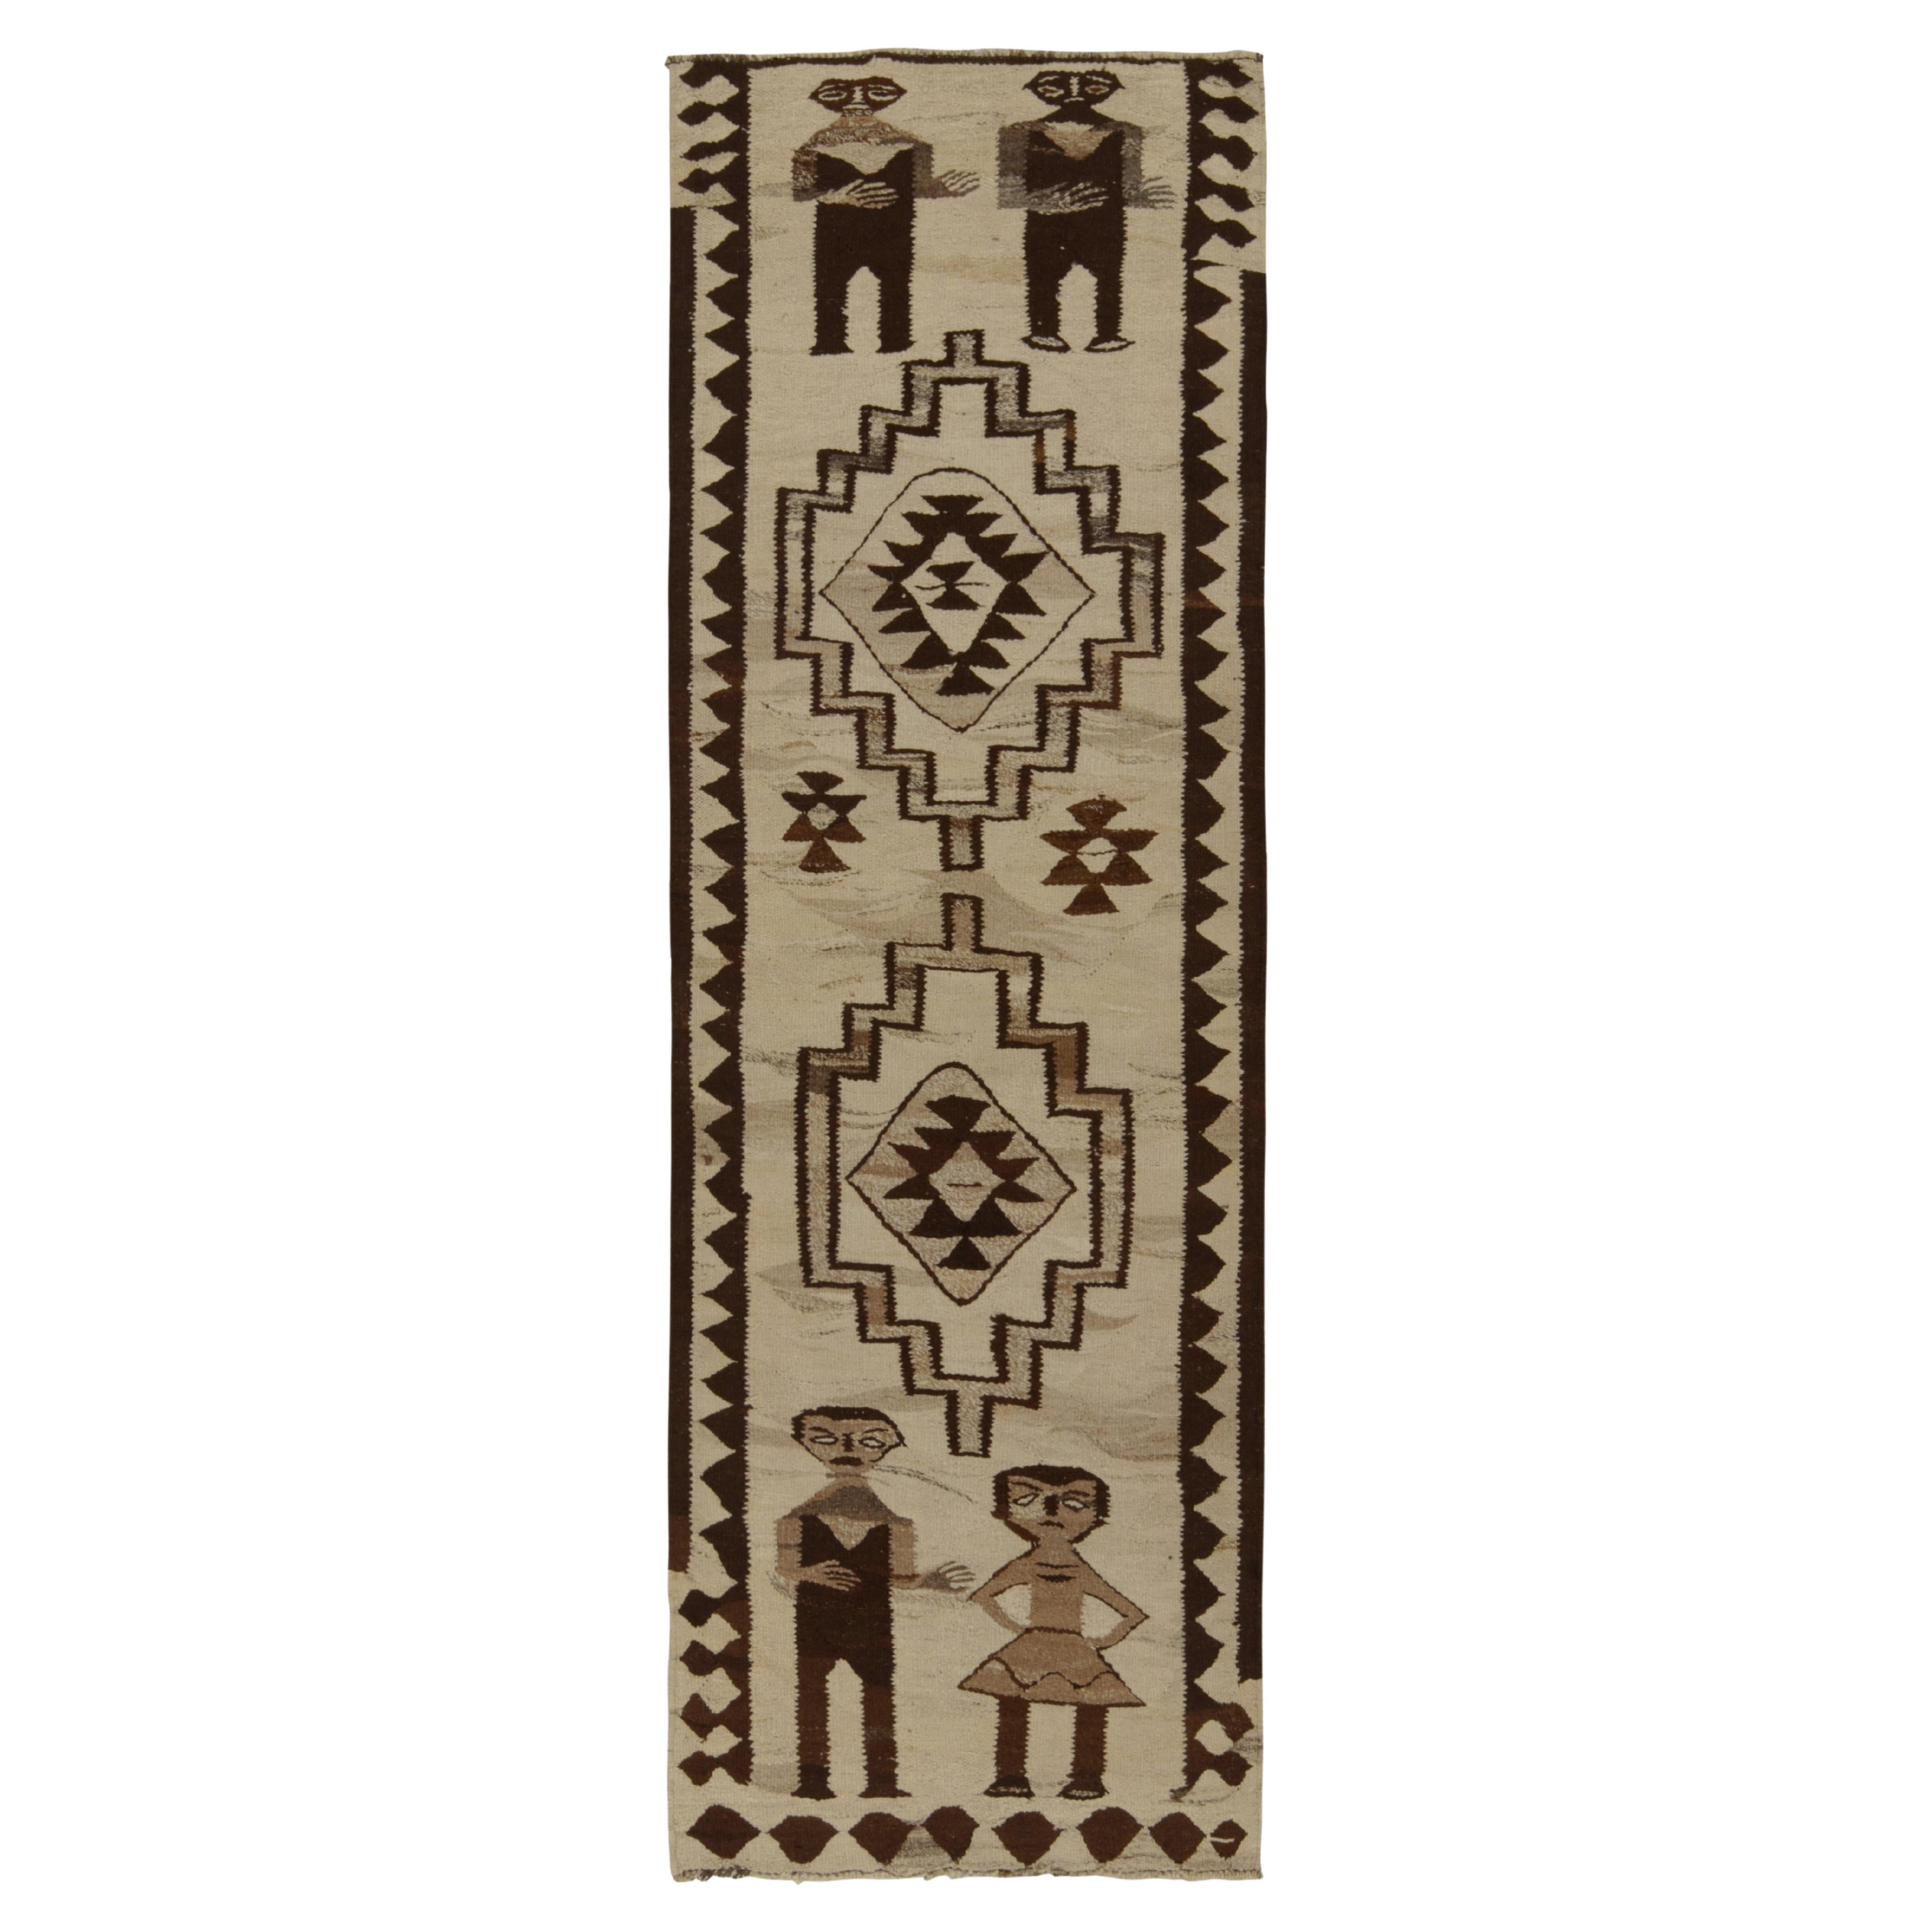 Vintage Kilim Runner in Beige-Brown Tribal PictorialsPattern by Rug & Kilim For Sale